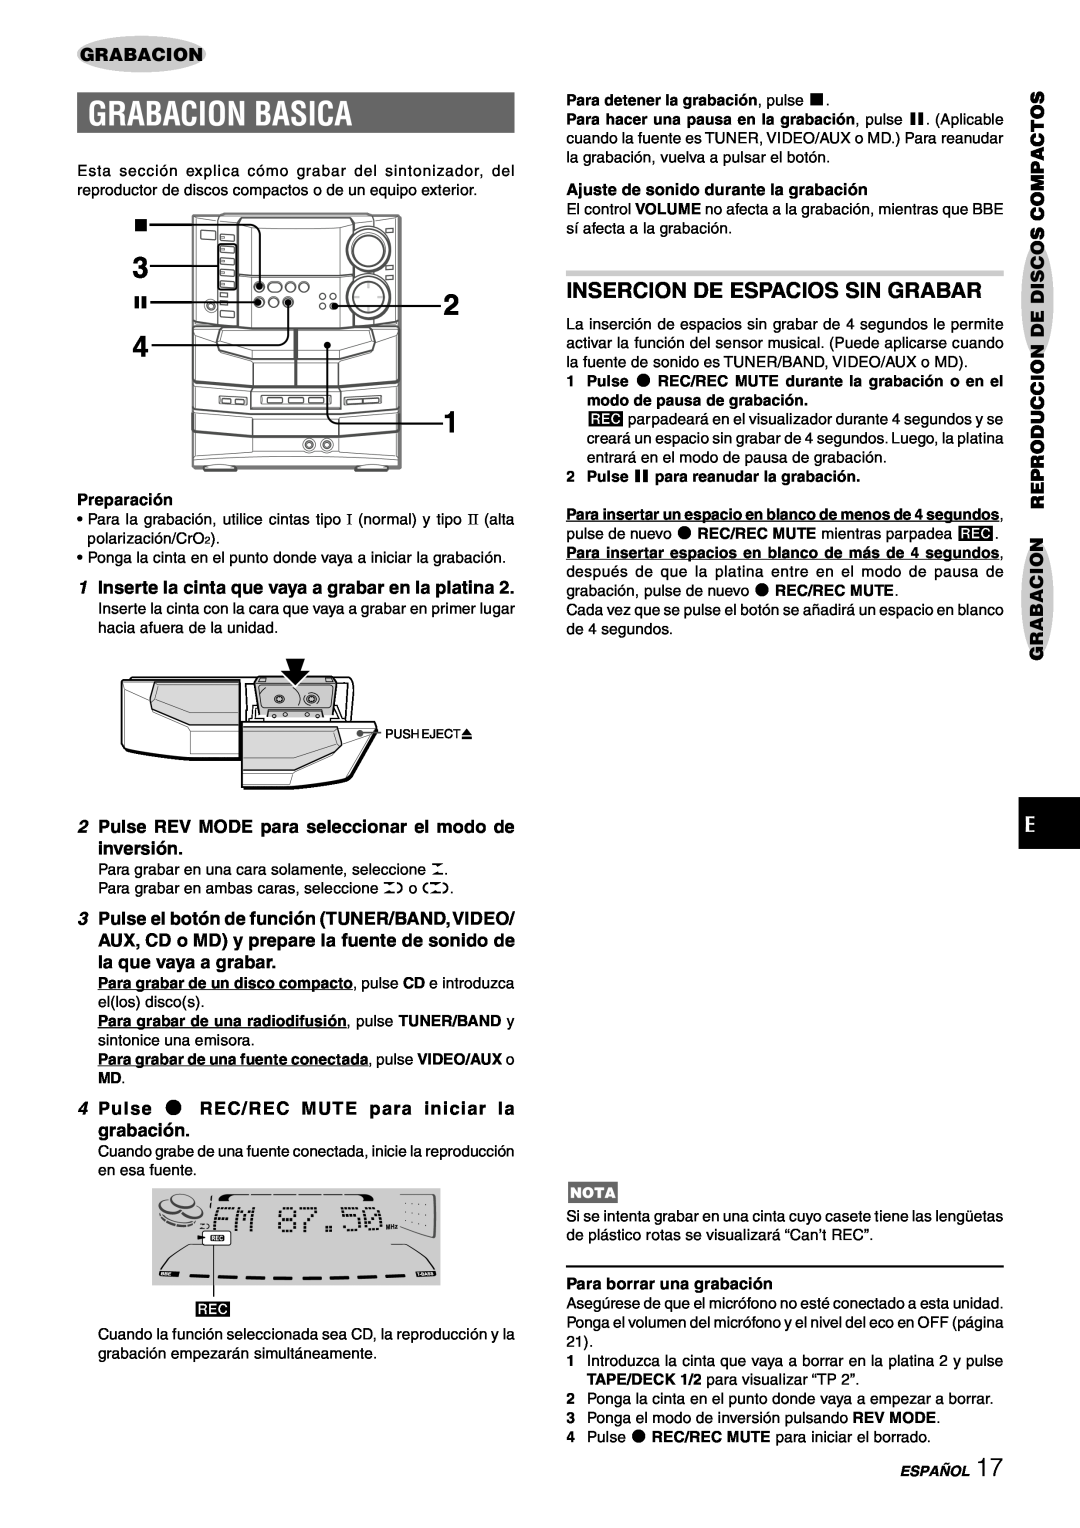 Sony NSX-AJ80 manual Grabacion Basica, Insercion De Espacios Sin Grabar, 1Inserte la cinta que vaya a grabar en la platina 